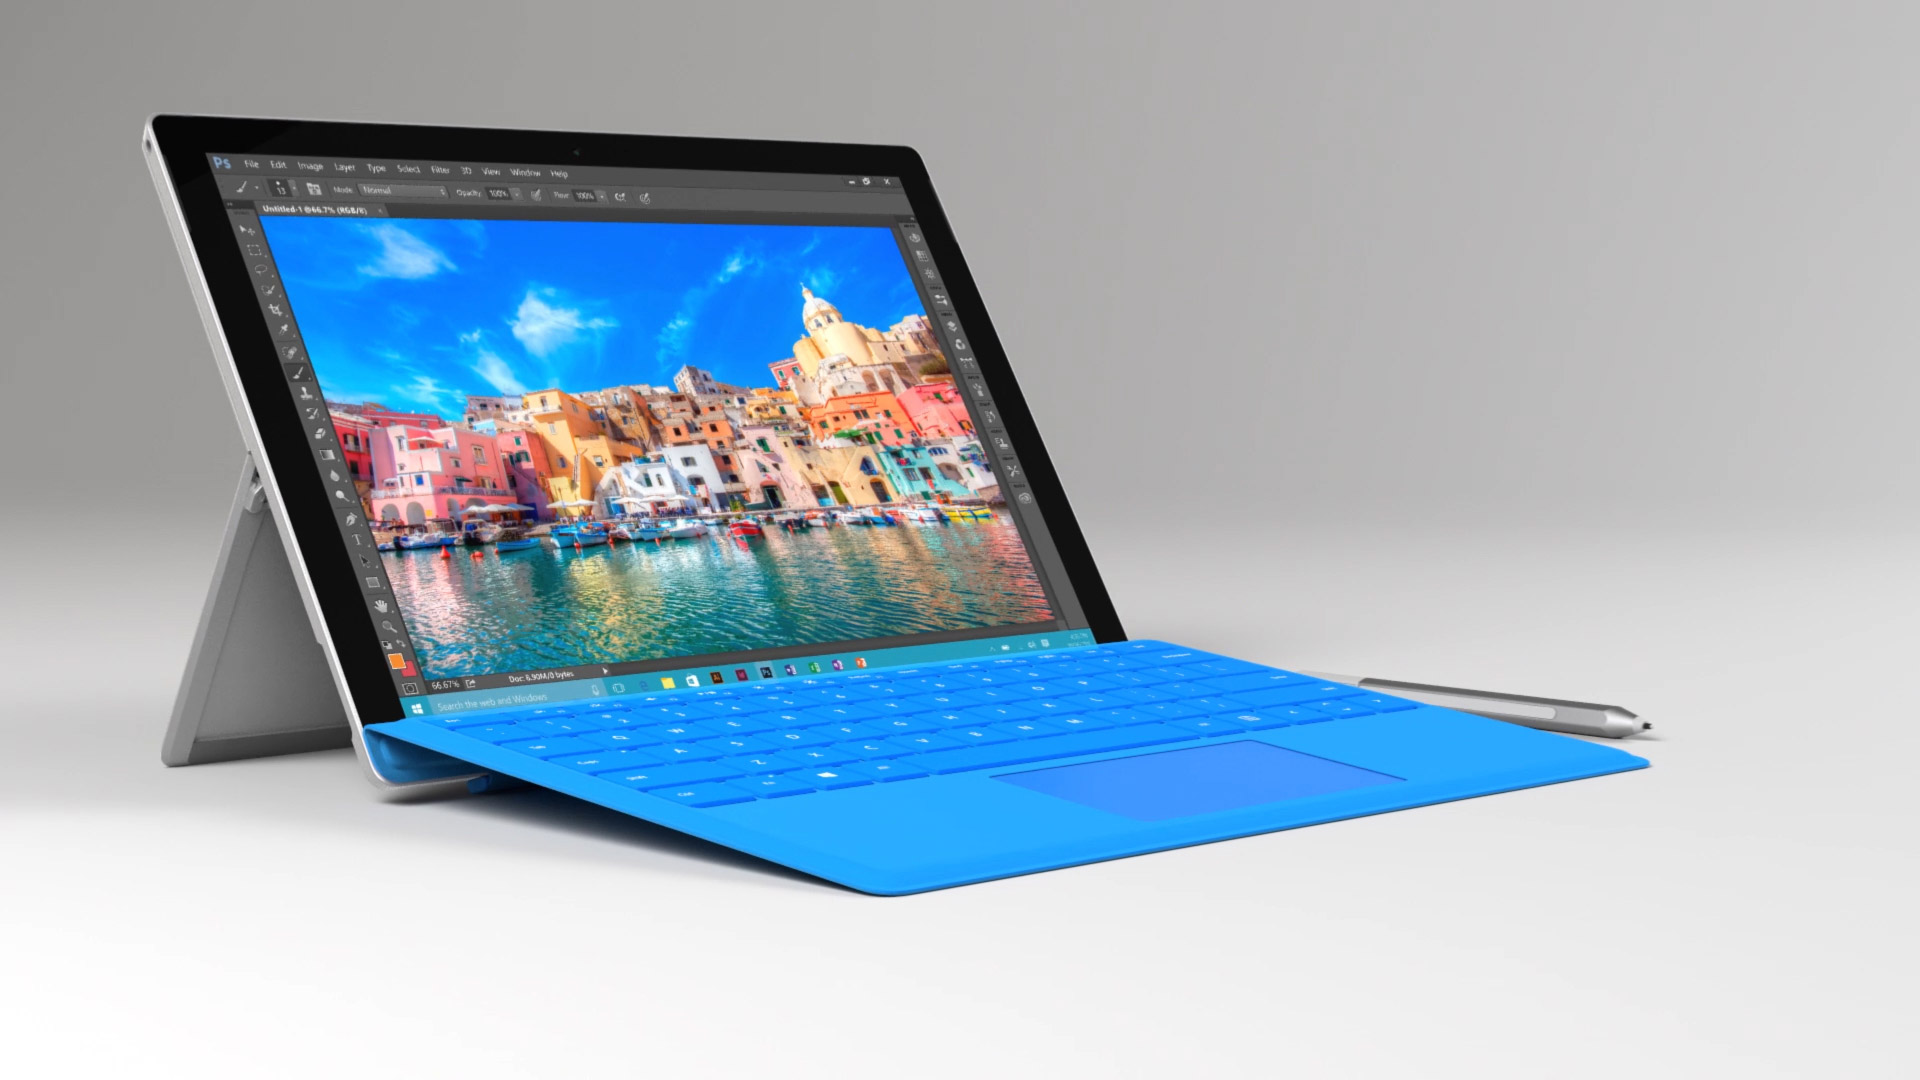 Microsoft Surface Pro 4 Image - Windows Surface Pro 2017 - HD Wallpaper 